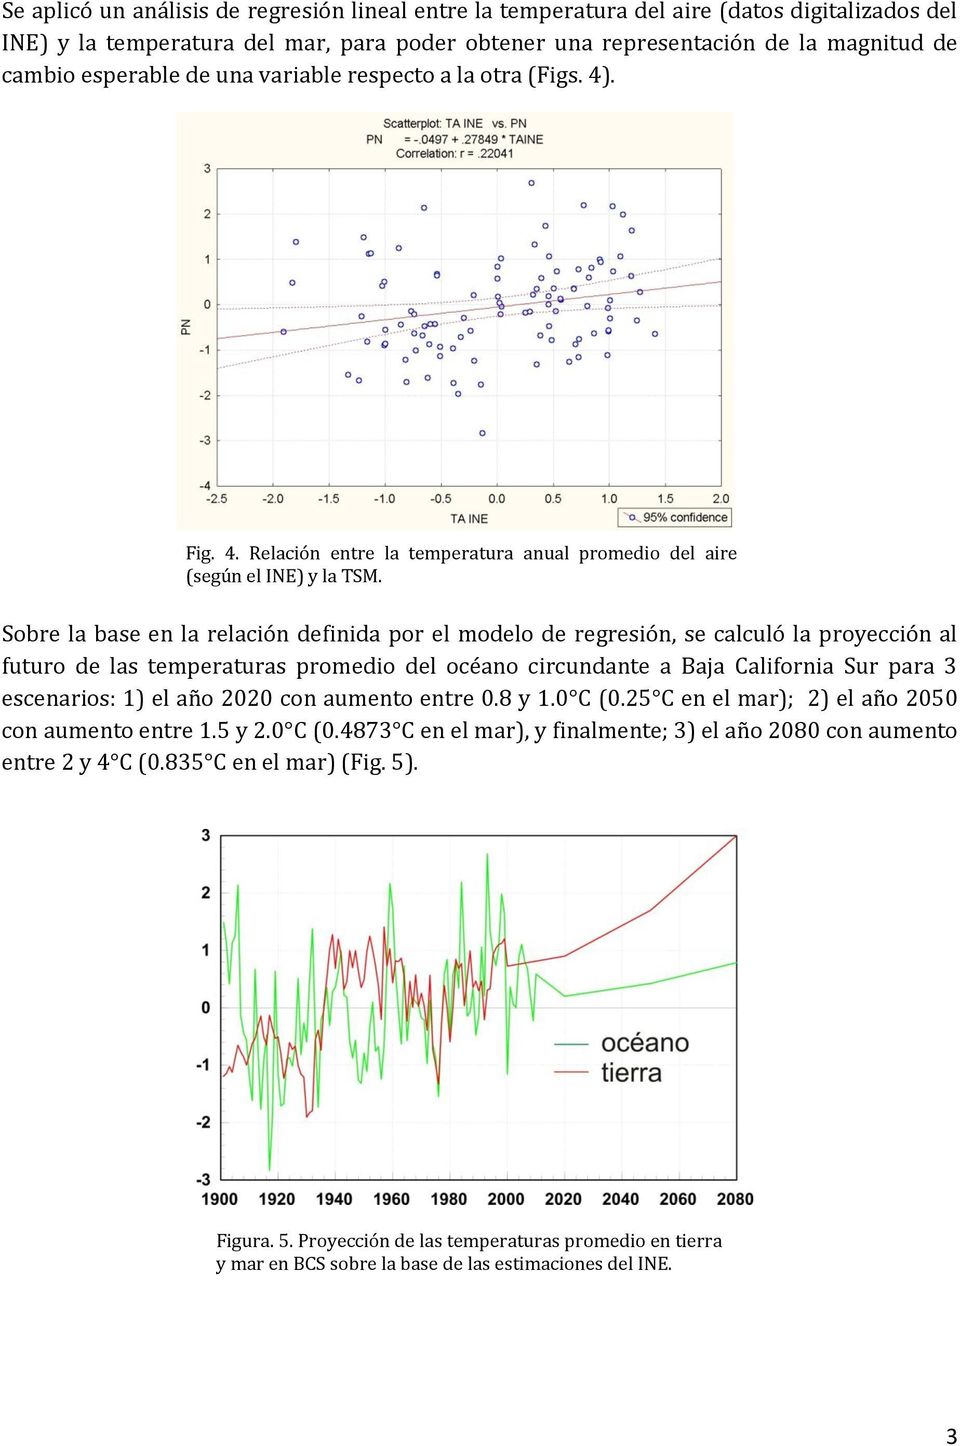 Sobre la base en la relación definida por el modelo de regresión, se calculó la proyección al futuro de las temperaturas promedio del océano circundante a Baja California Sur para 3 escenarios: 1) el